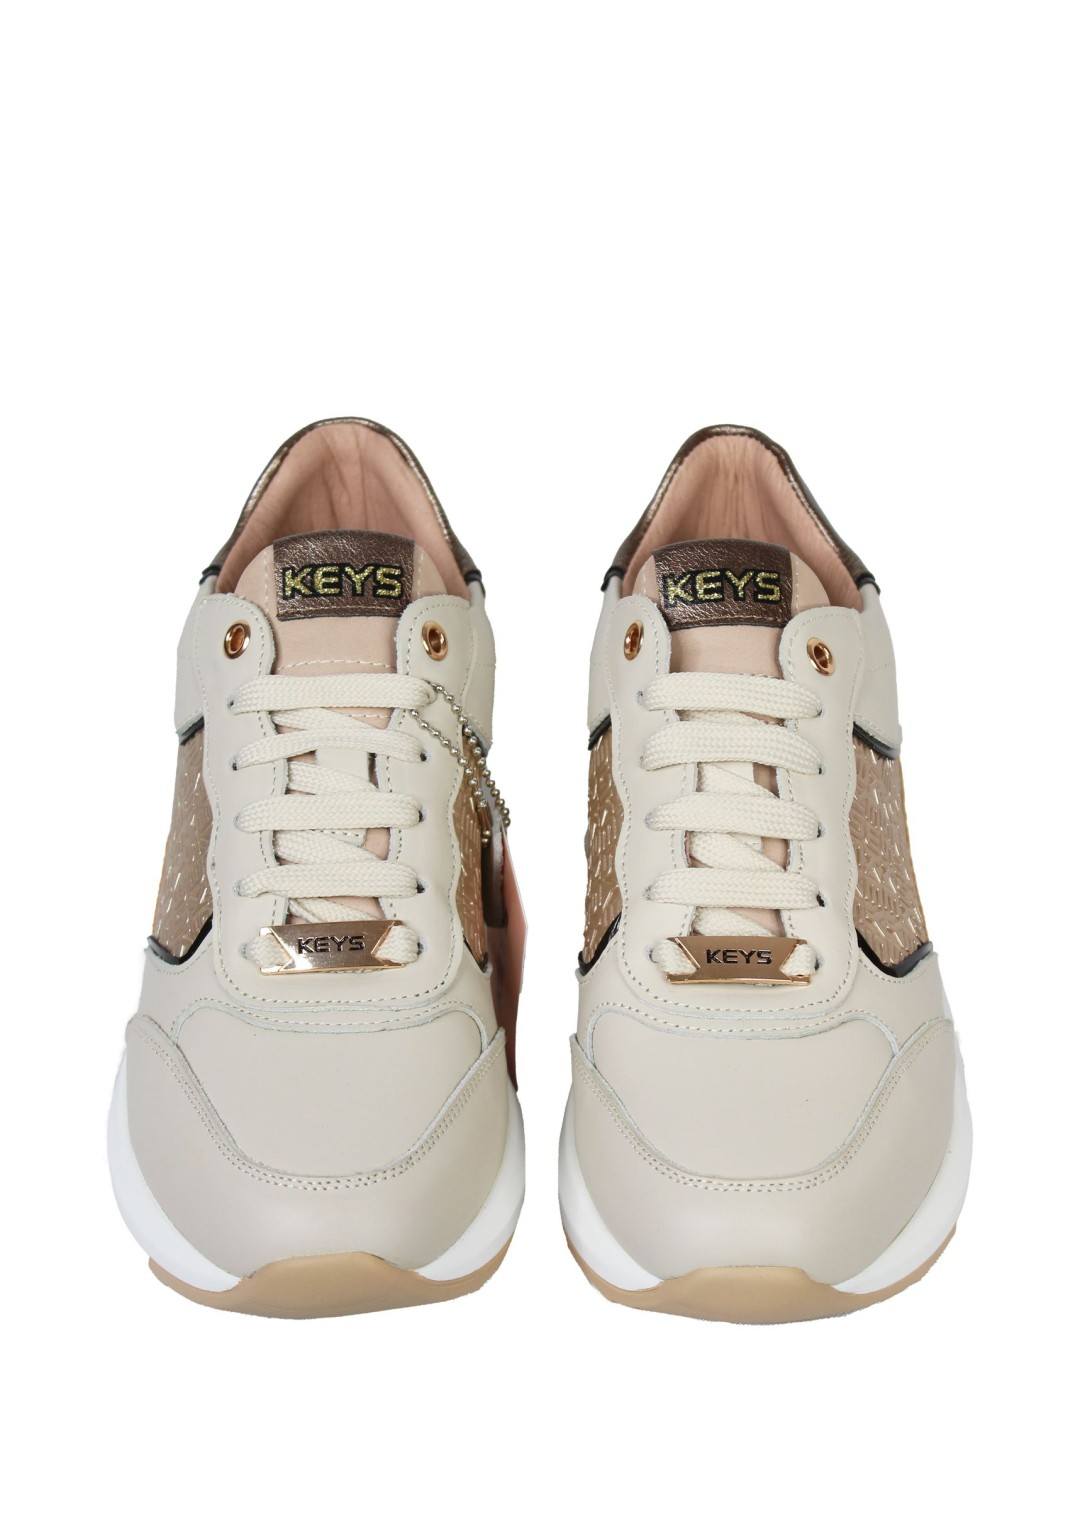 KEYS - Sneaker Logata - Donna - K-8350